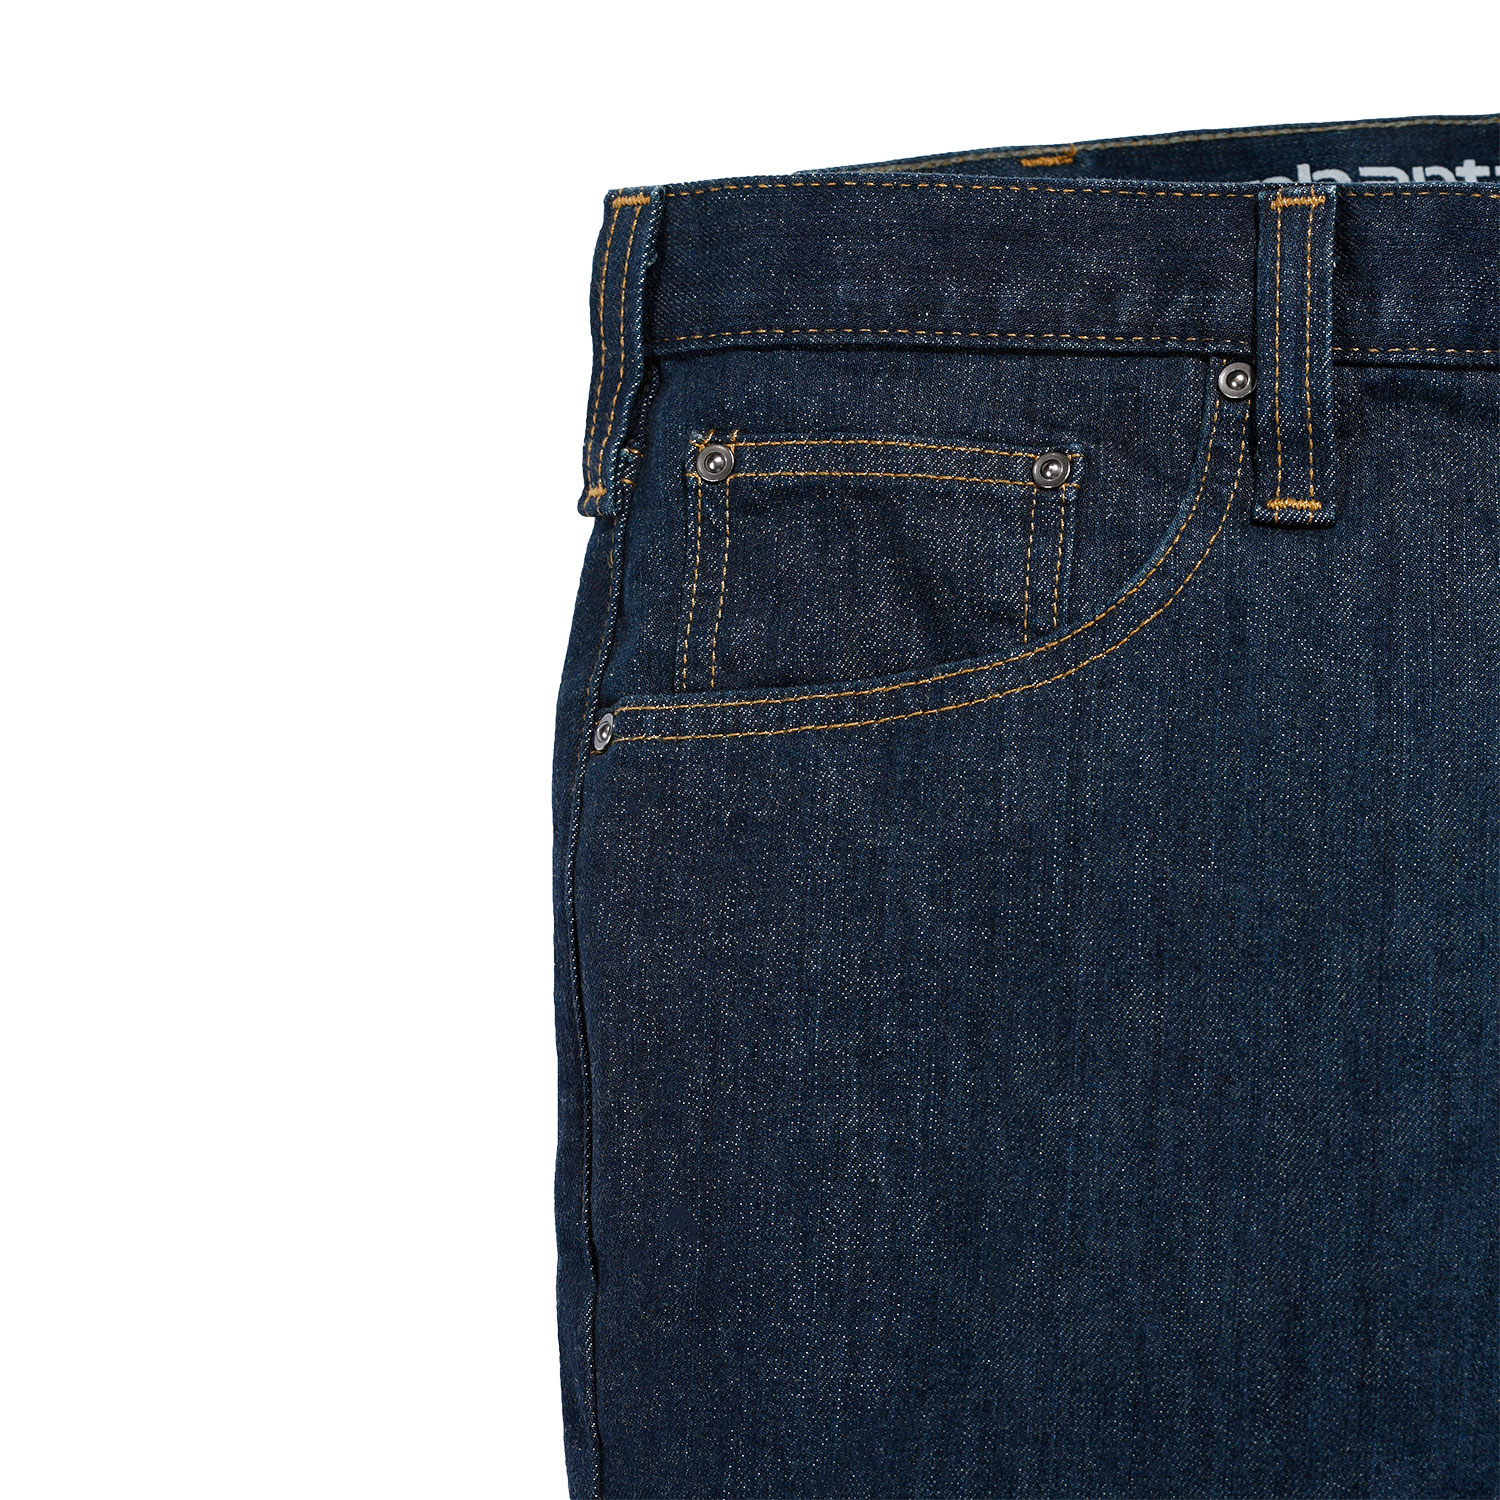 Carhartt Jeans Rugged Flex Slim Fit - 4